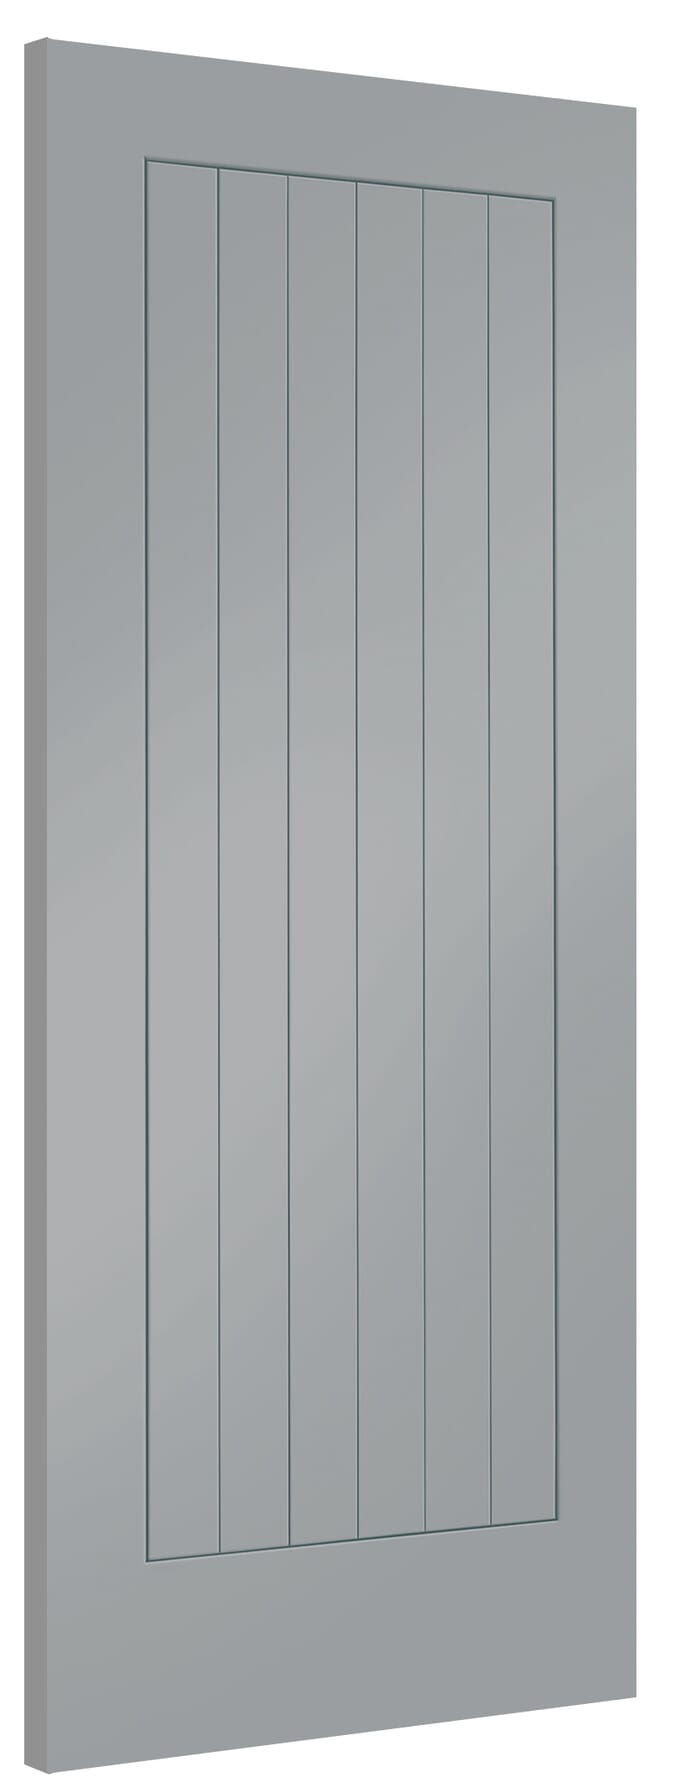 813x2032x35mm (32") Suffolk Storm Grey Internal Doors